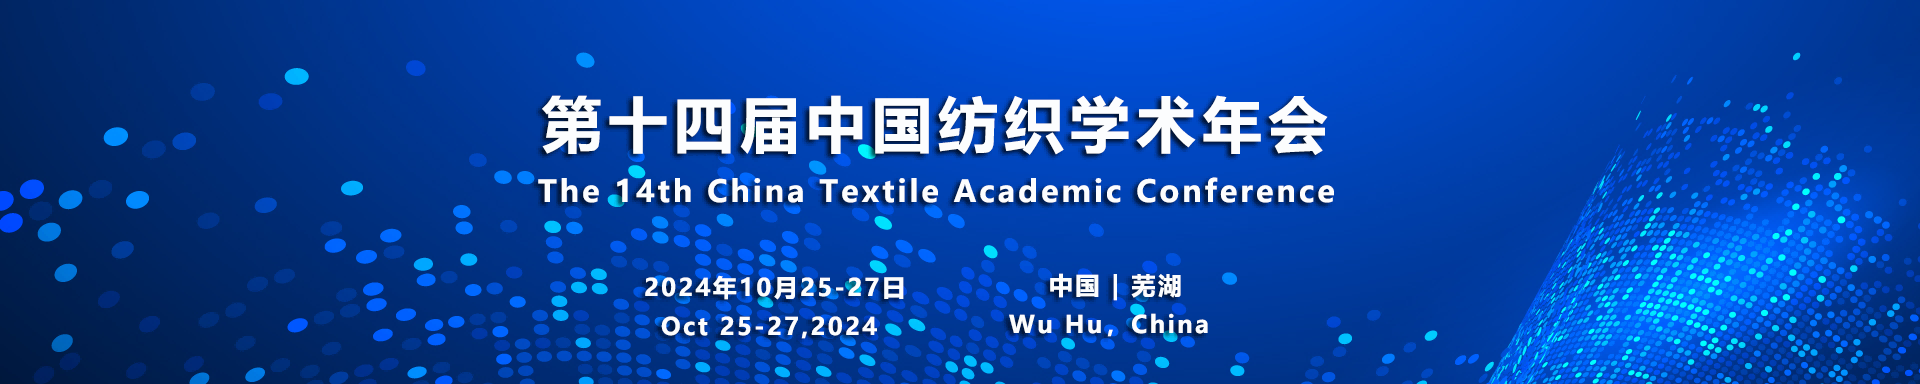 主要特邀发言嘉宾 - 第十四届中国纺织学术年会